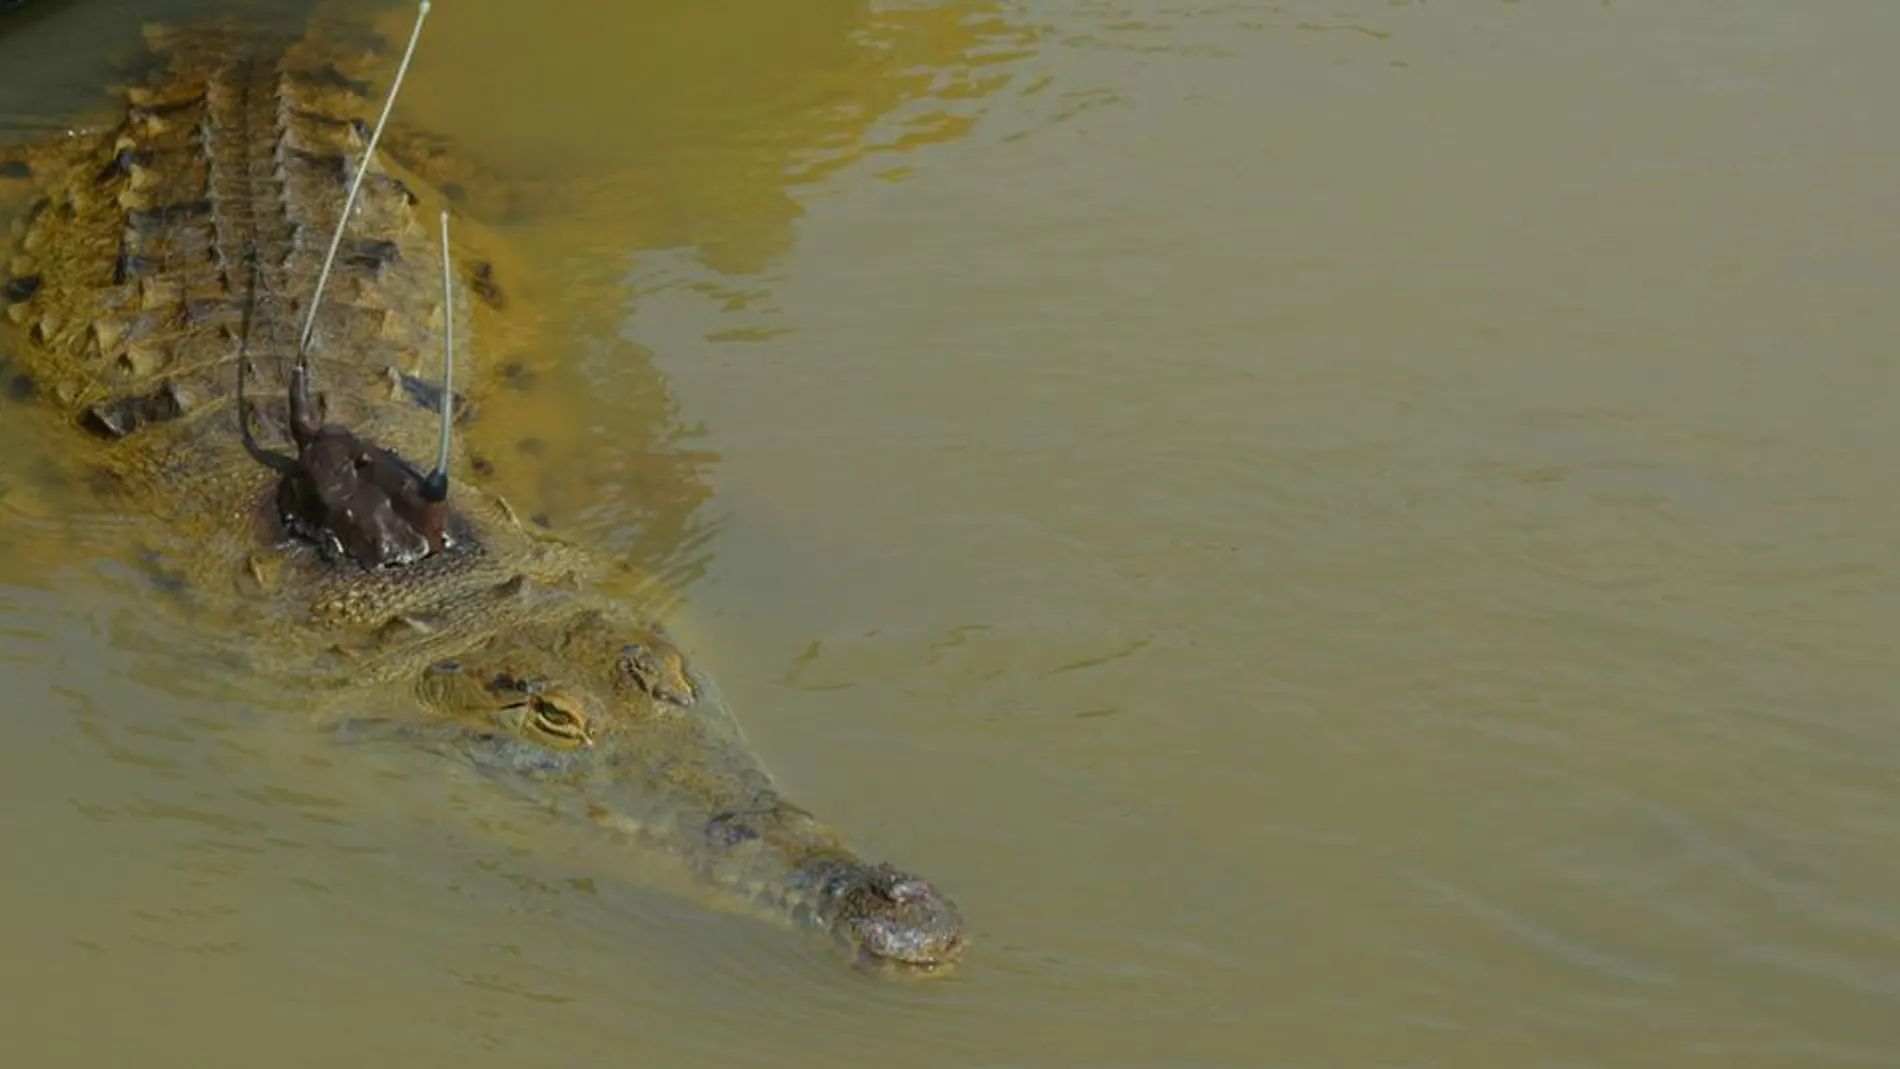 Cocodrilo de la especia Crocodylus intermedius con un aparato de seguimiento instalado